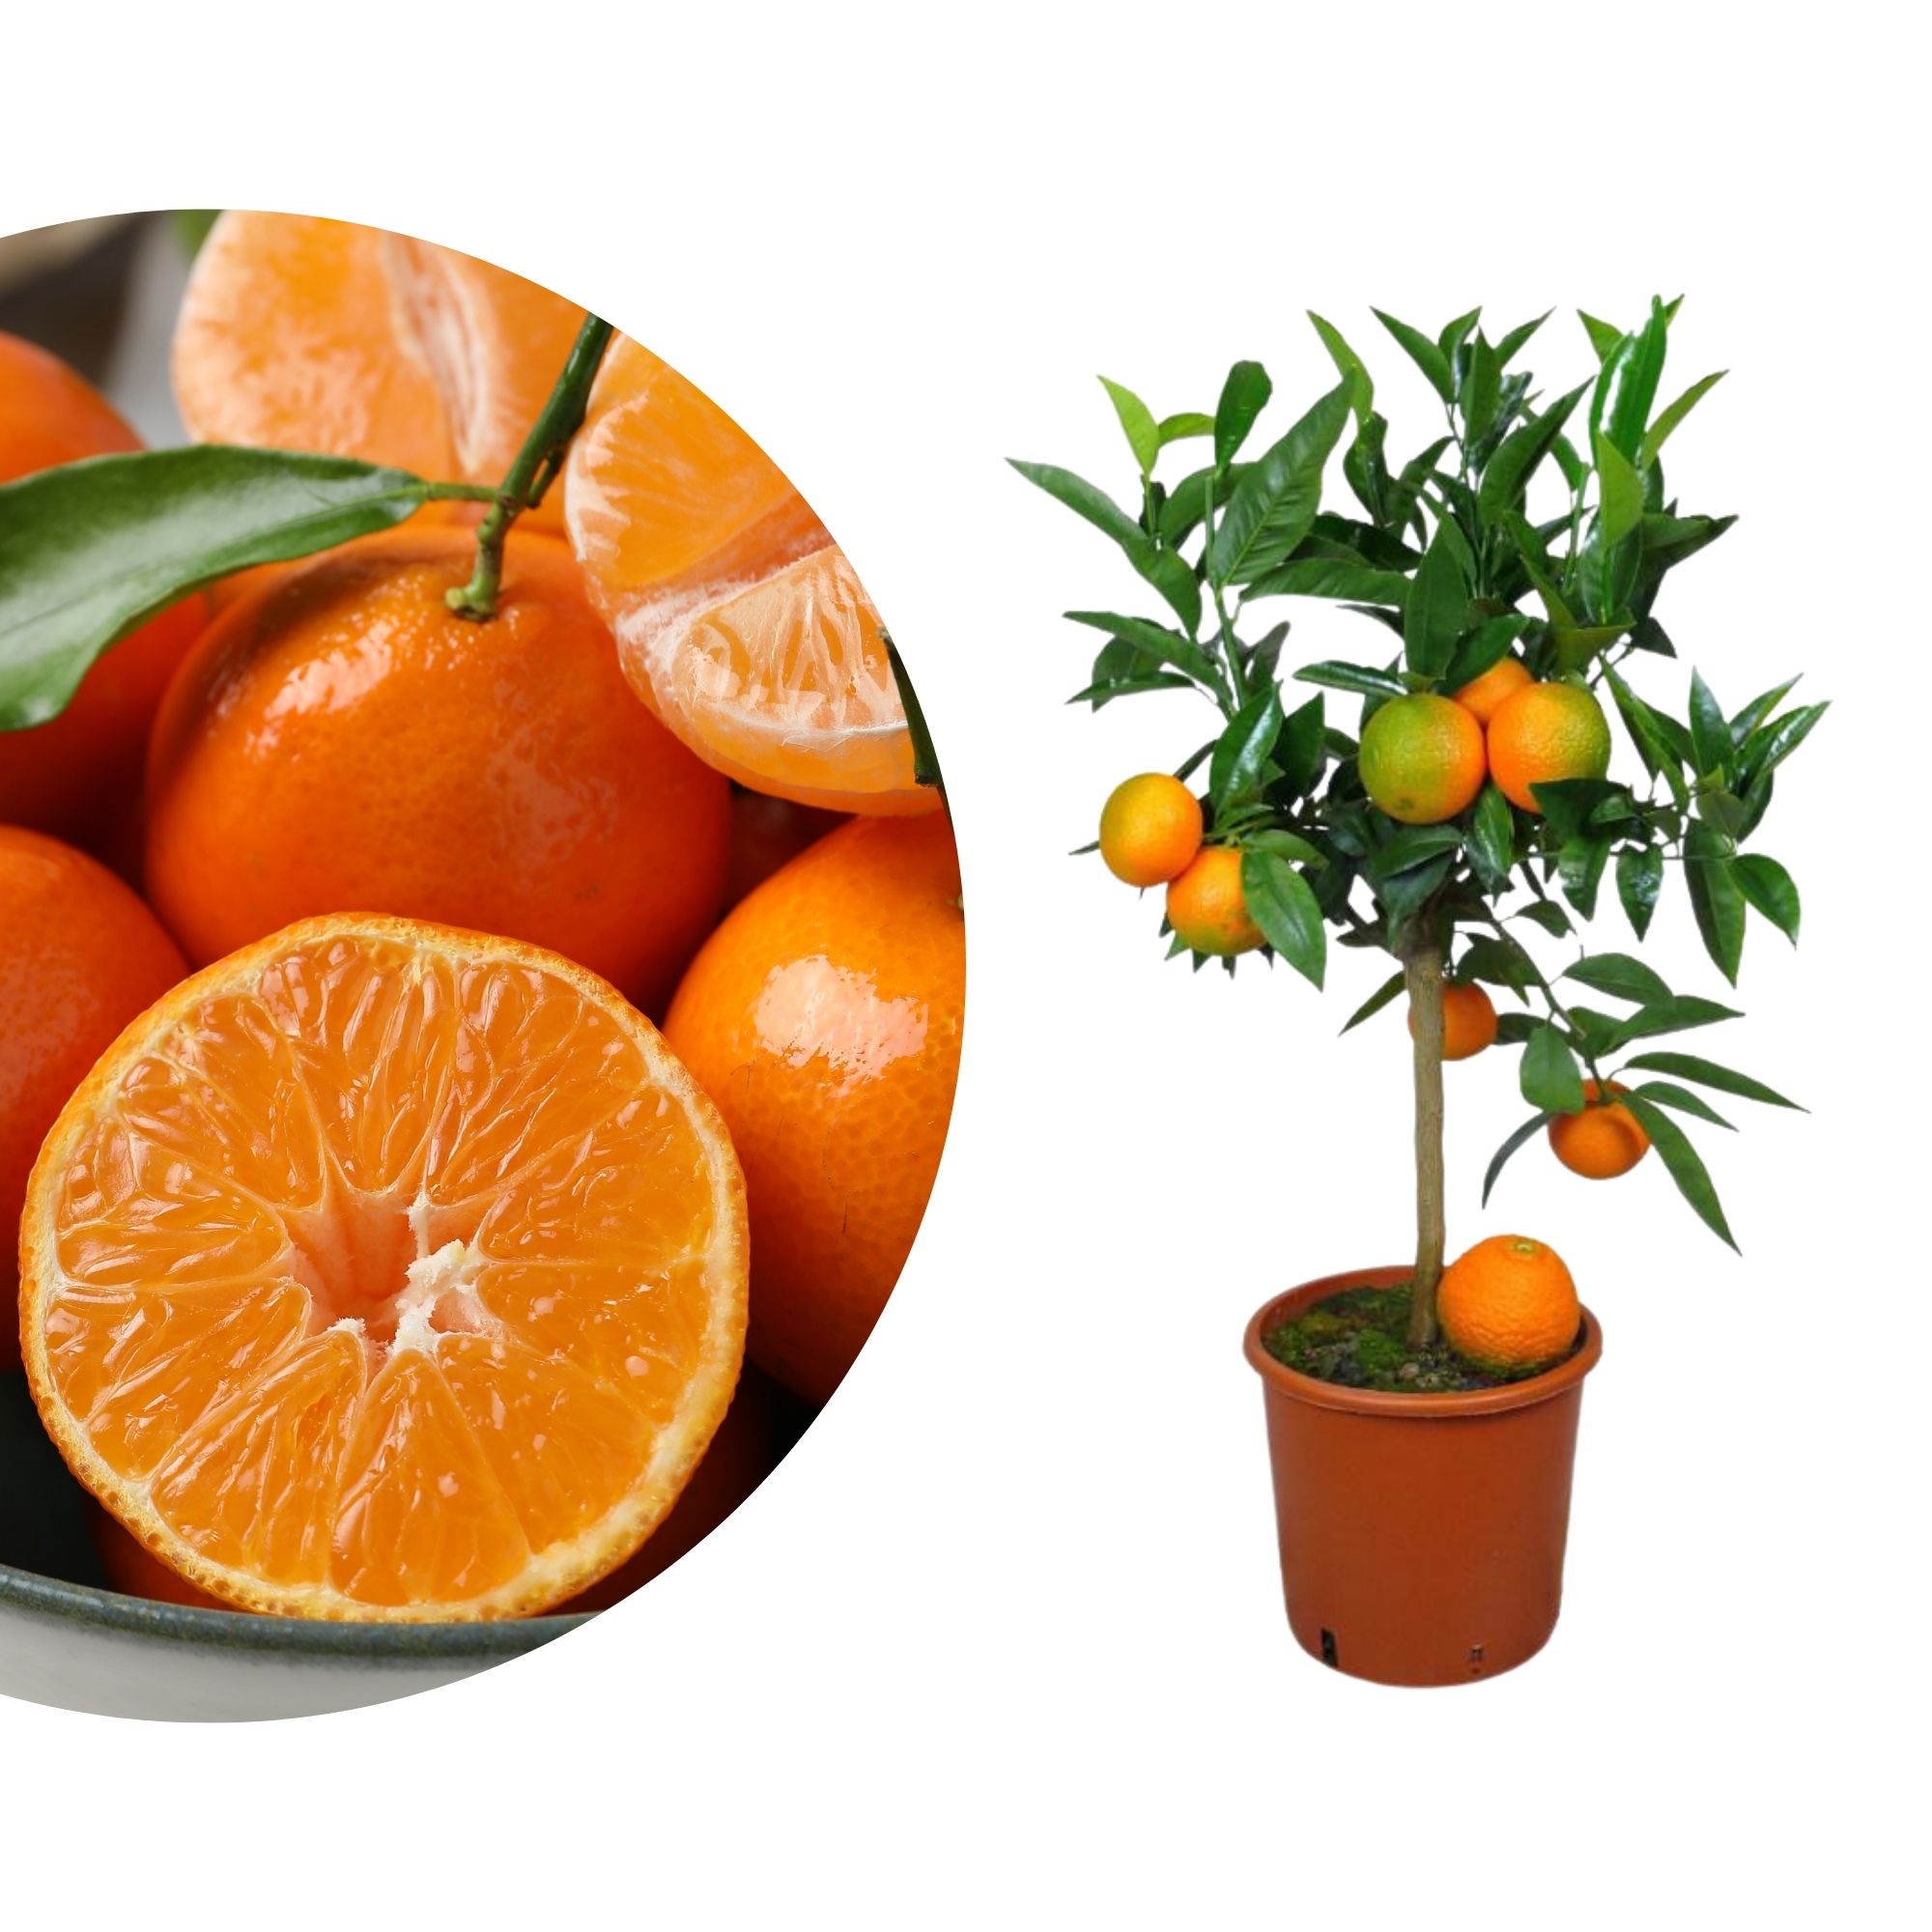 Clementinenbaum [Mezzo] - Citrus clementina / Citrus reticulata 'Clementine'